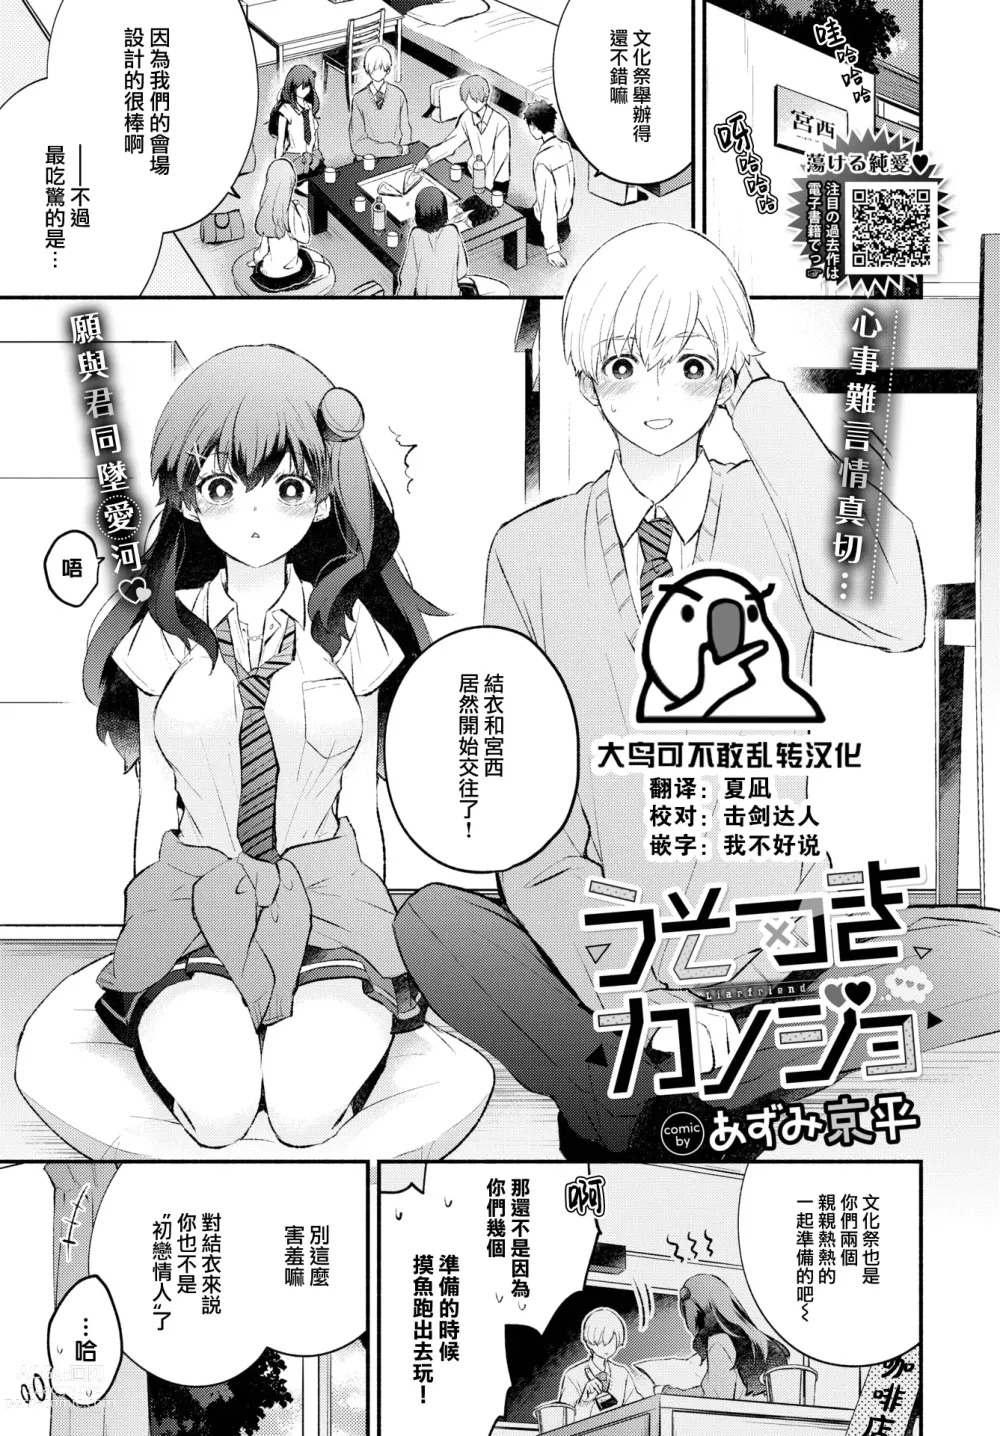 Page 1 of manga Usotsuki Kanojo